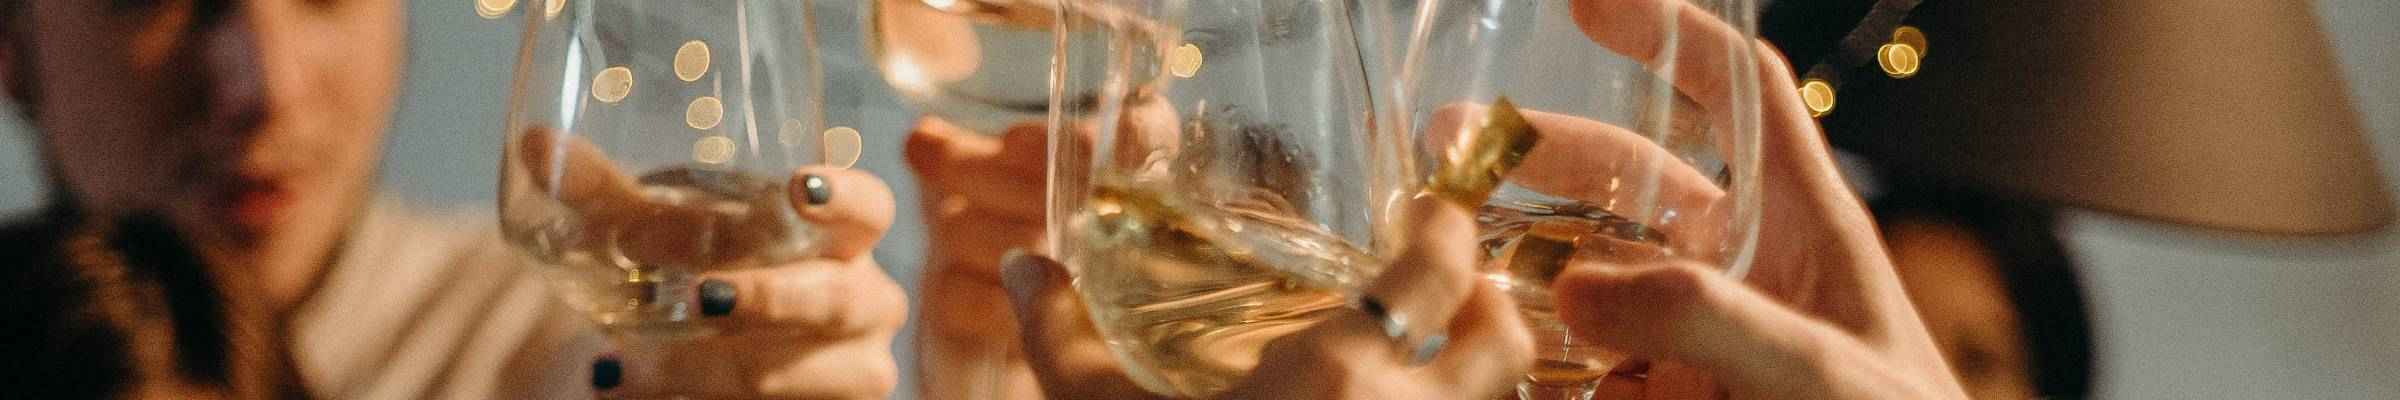 Sélection spéciale Champagne pour les fêtes | Conroy Vins et Spiritueux